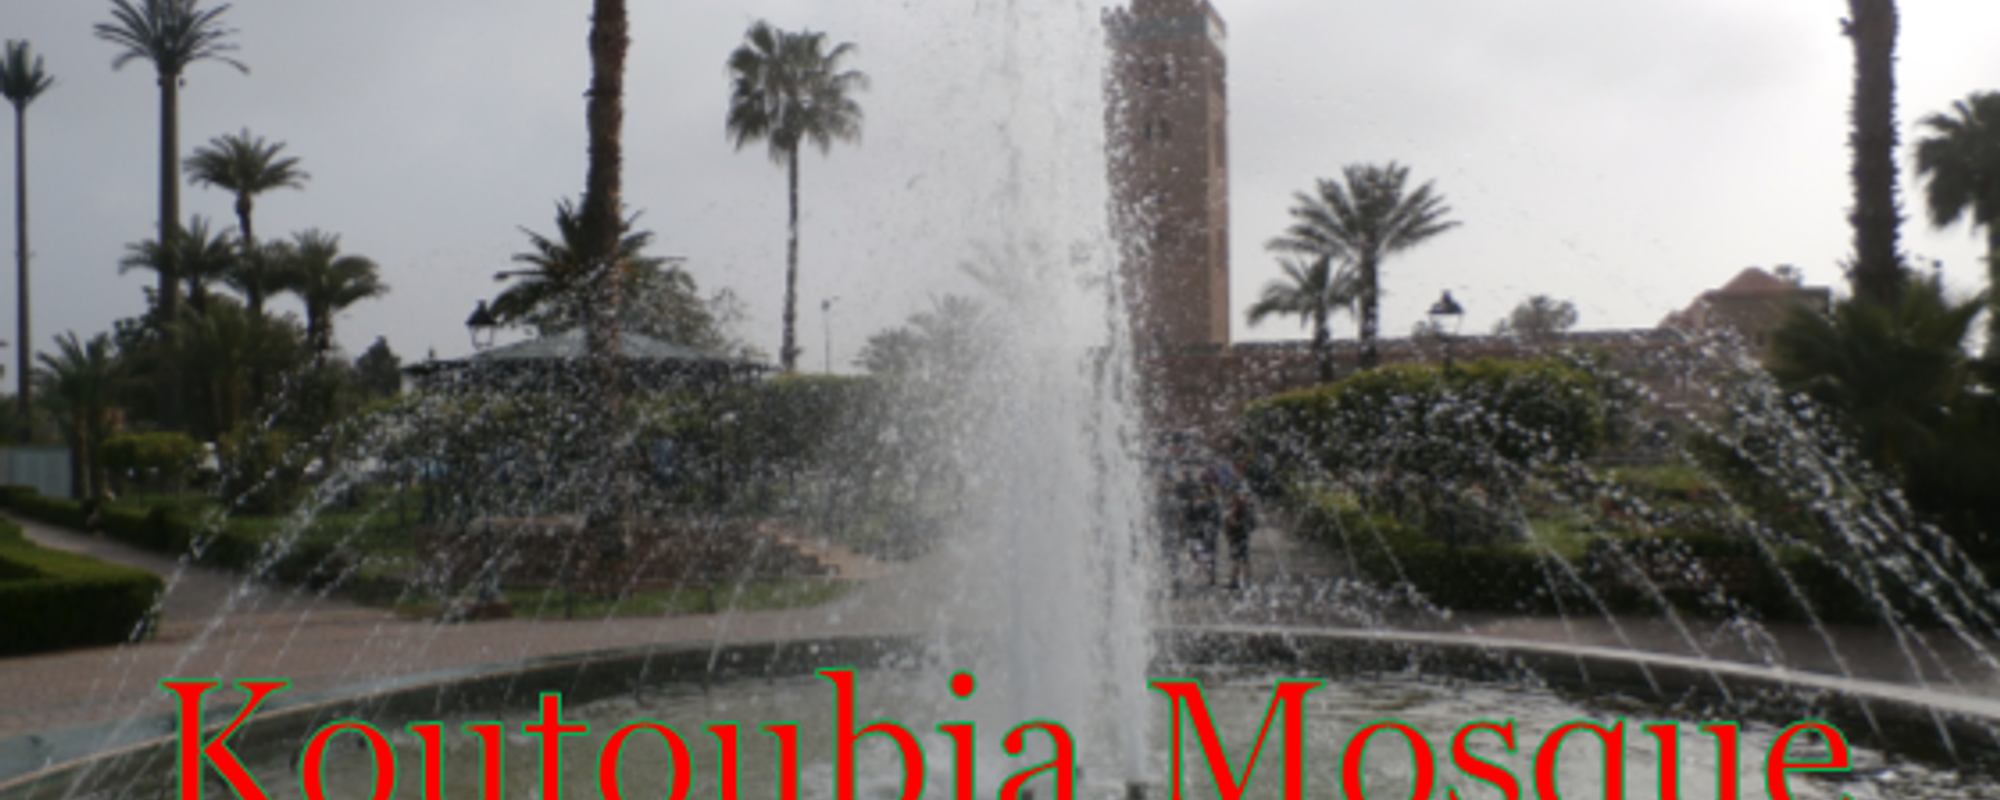 Koutoubia Mosque - Marrakech, Morocco